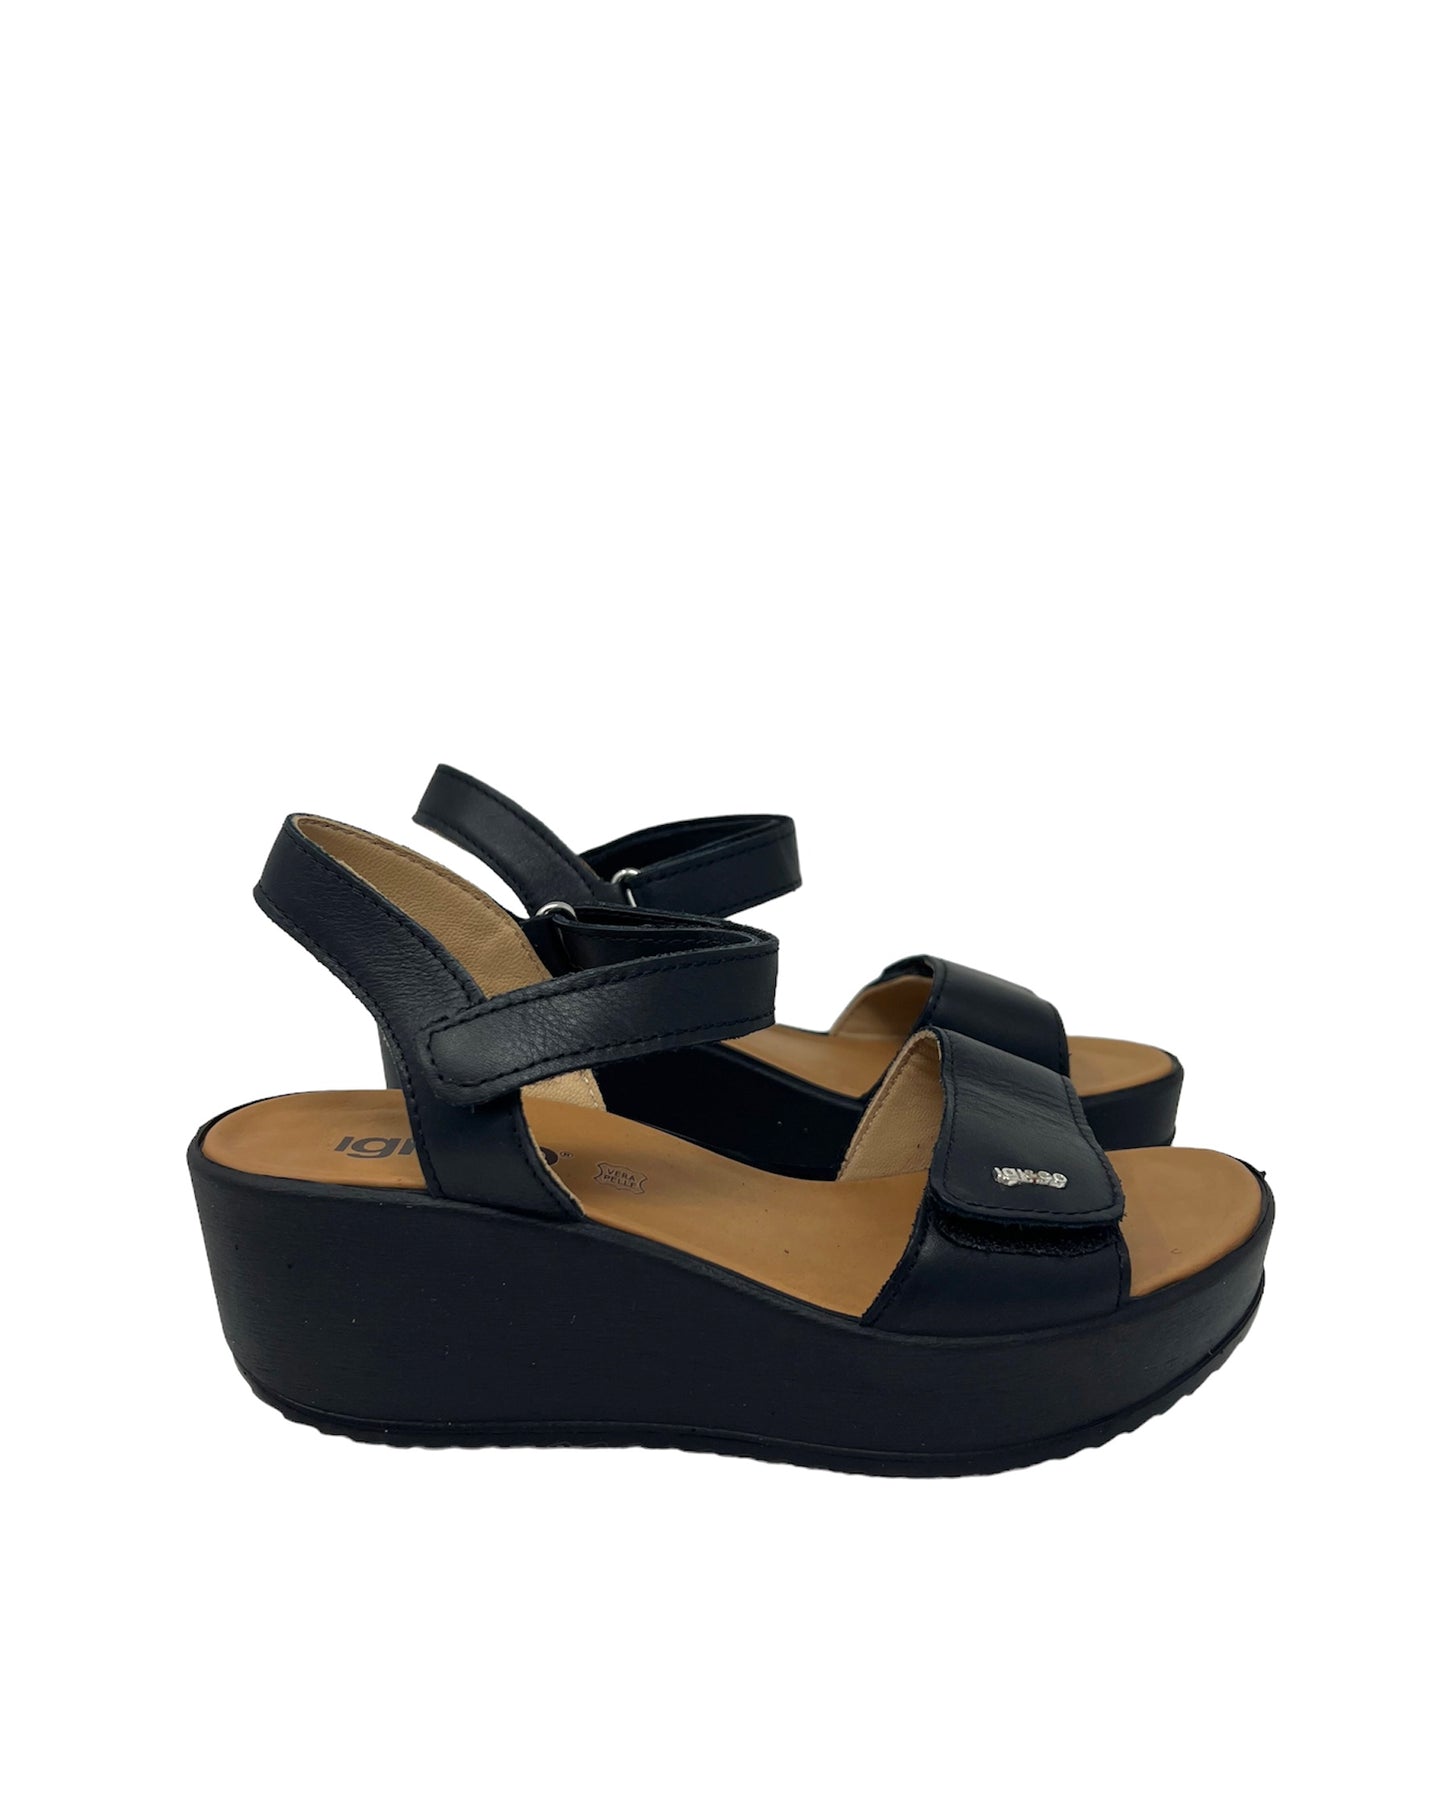 Sandalo platform in pelle nero Igi_&co -3667100